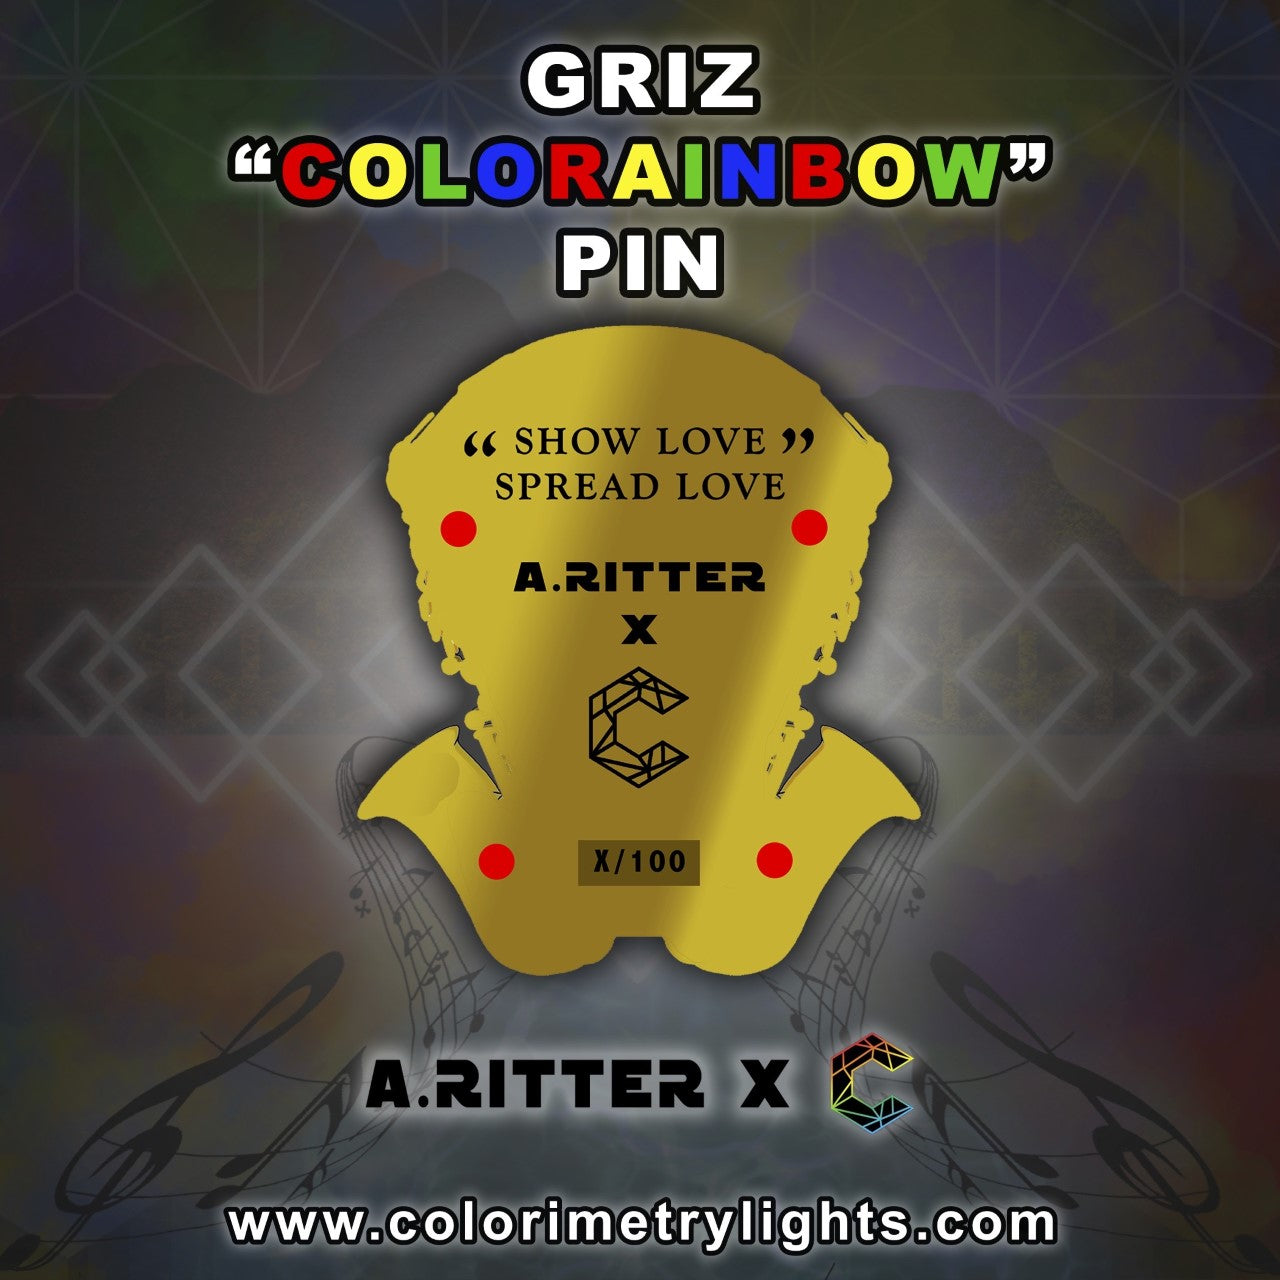 Griz "Colorainbow" Pin